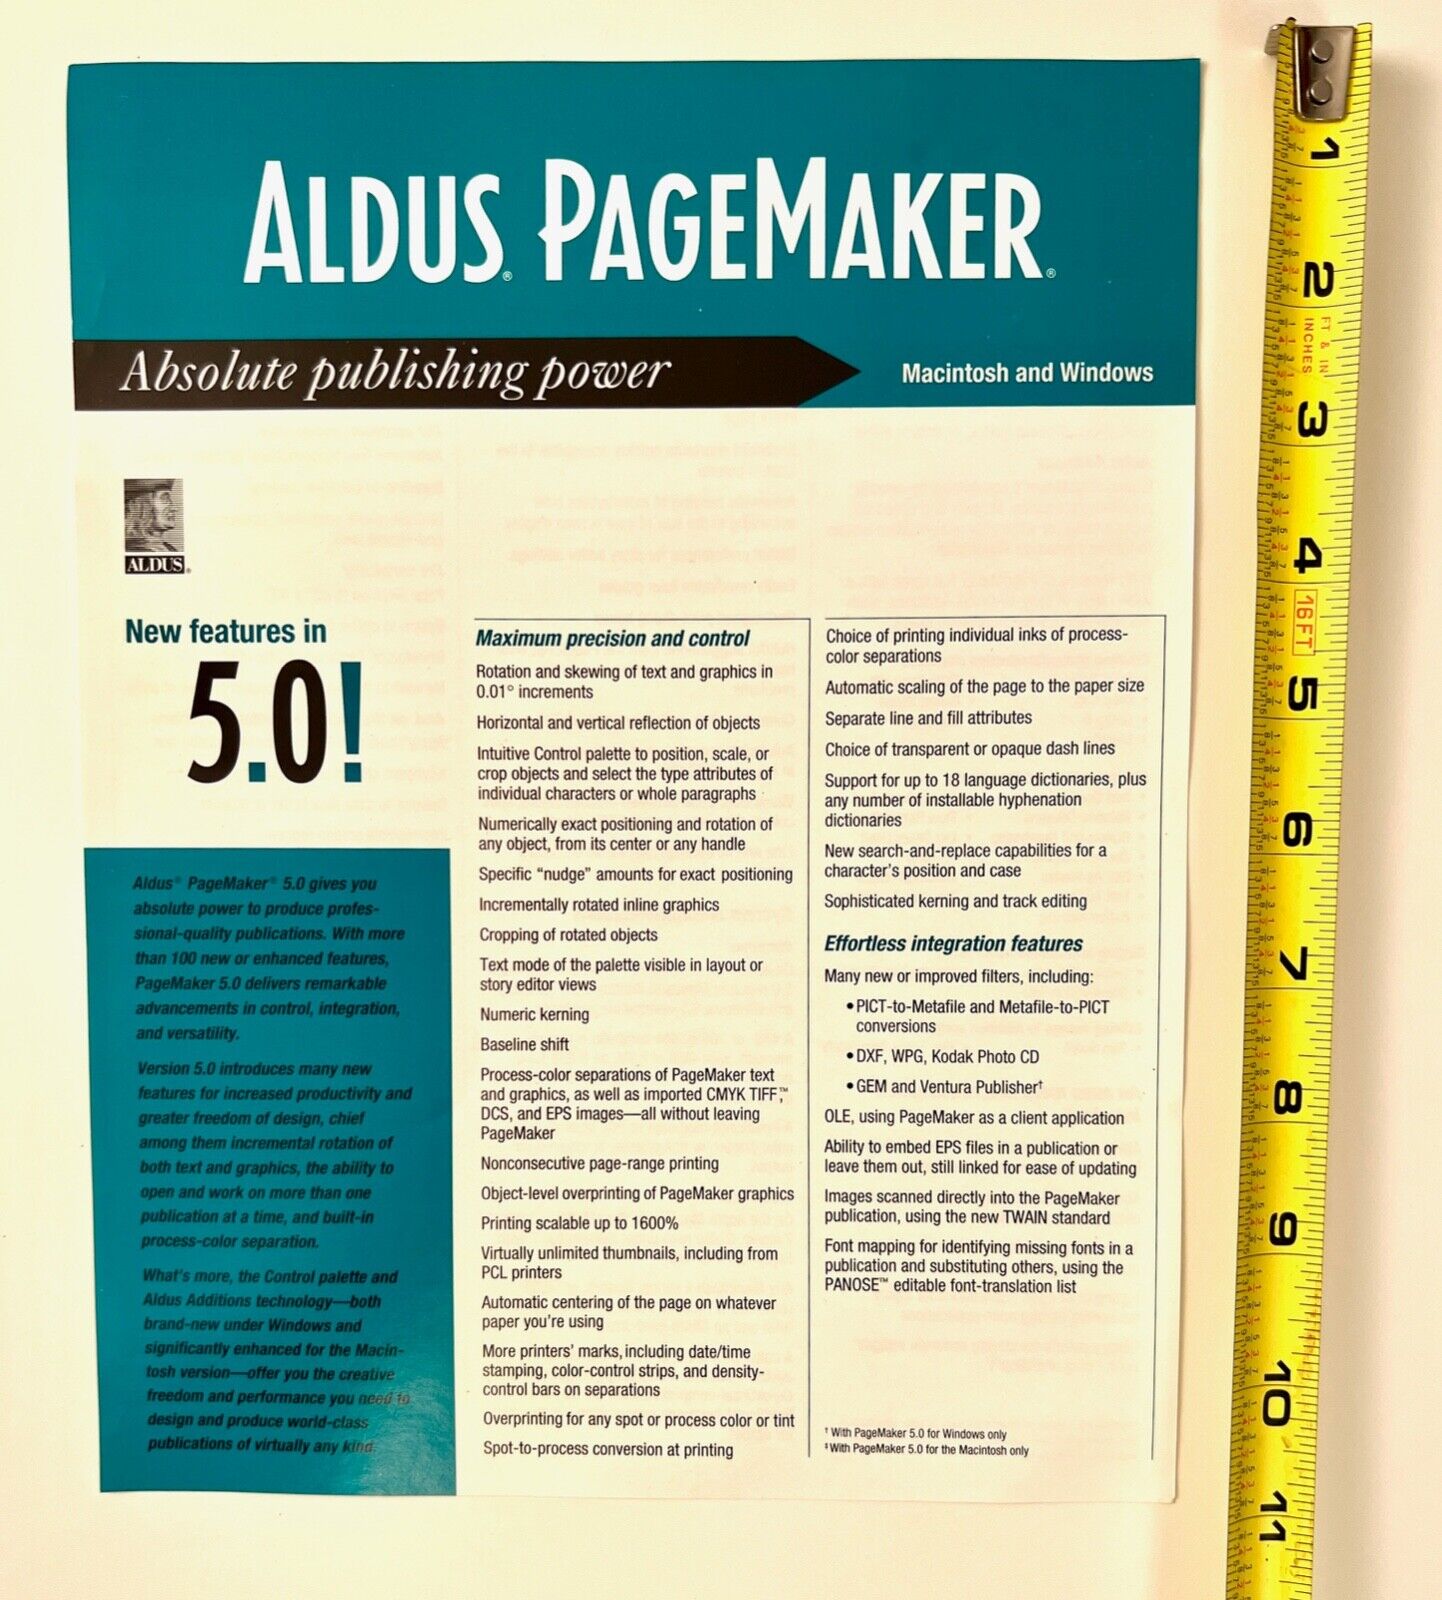 Aldus Pagemaker 1992 v5 Sell Sheet Slick - Amazing Vintage (pre Adobe Indesign)